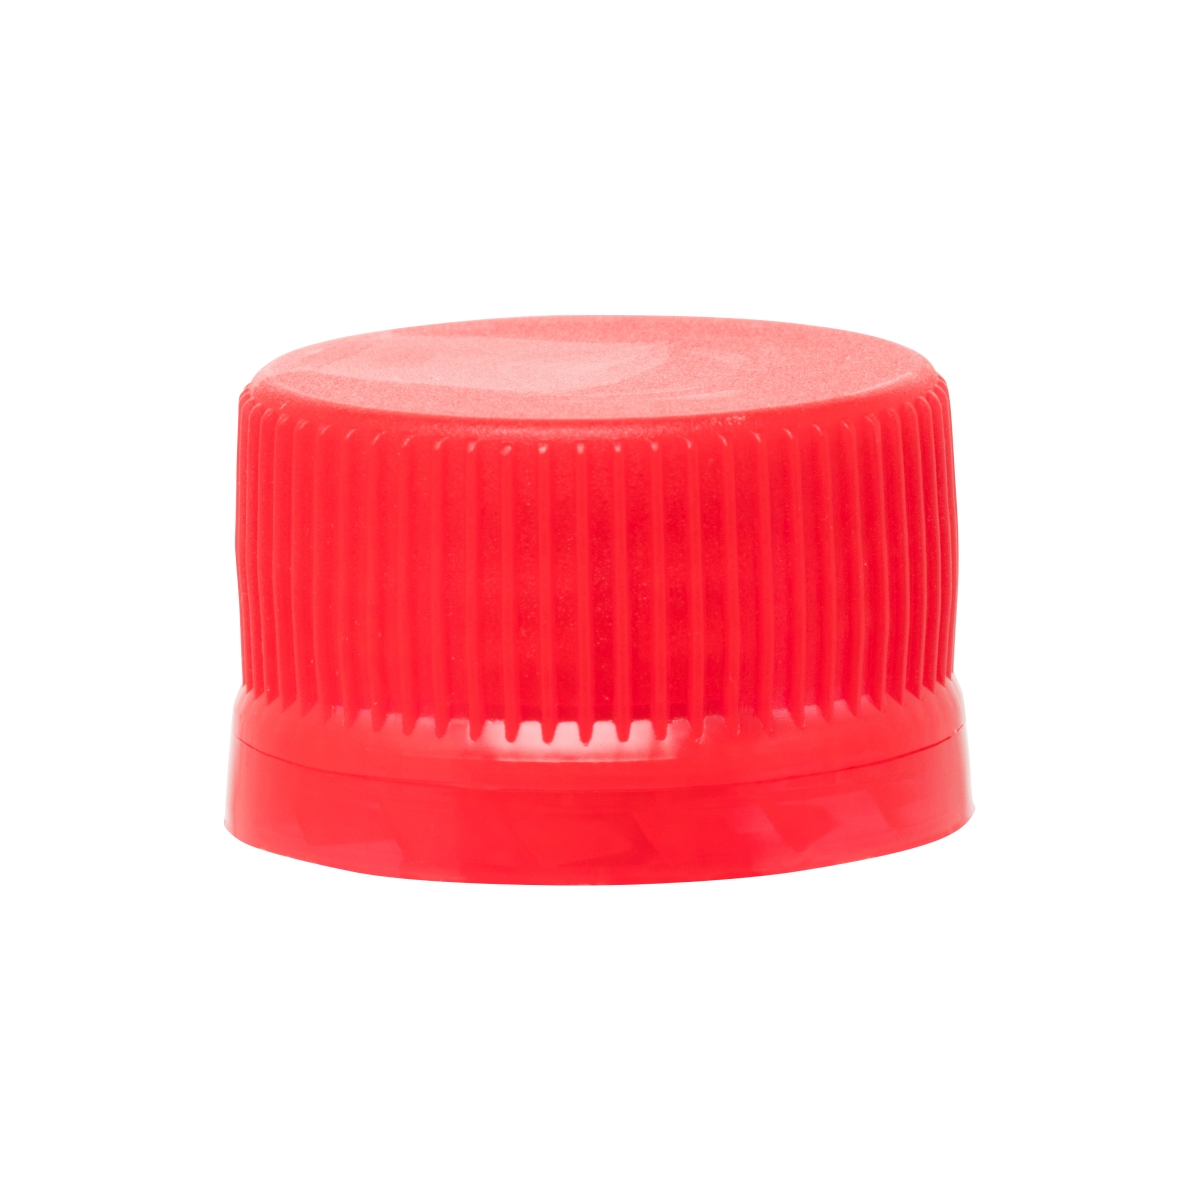 red plastic caps